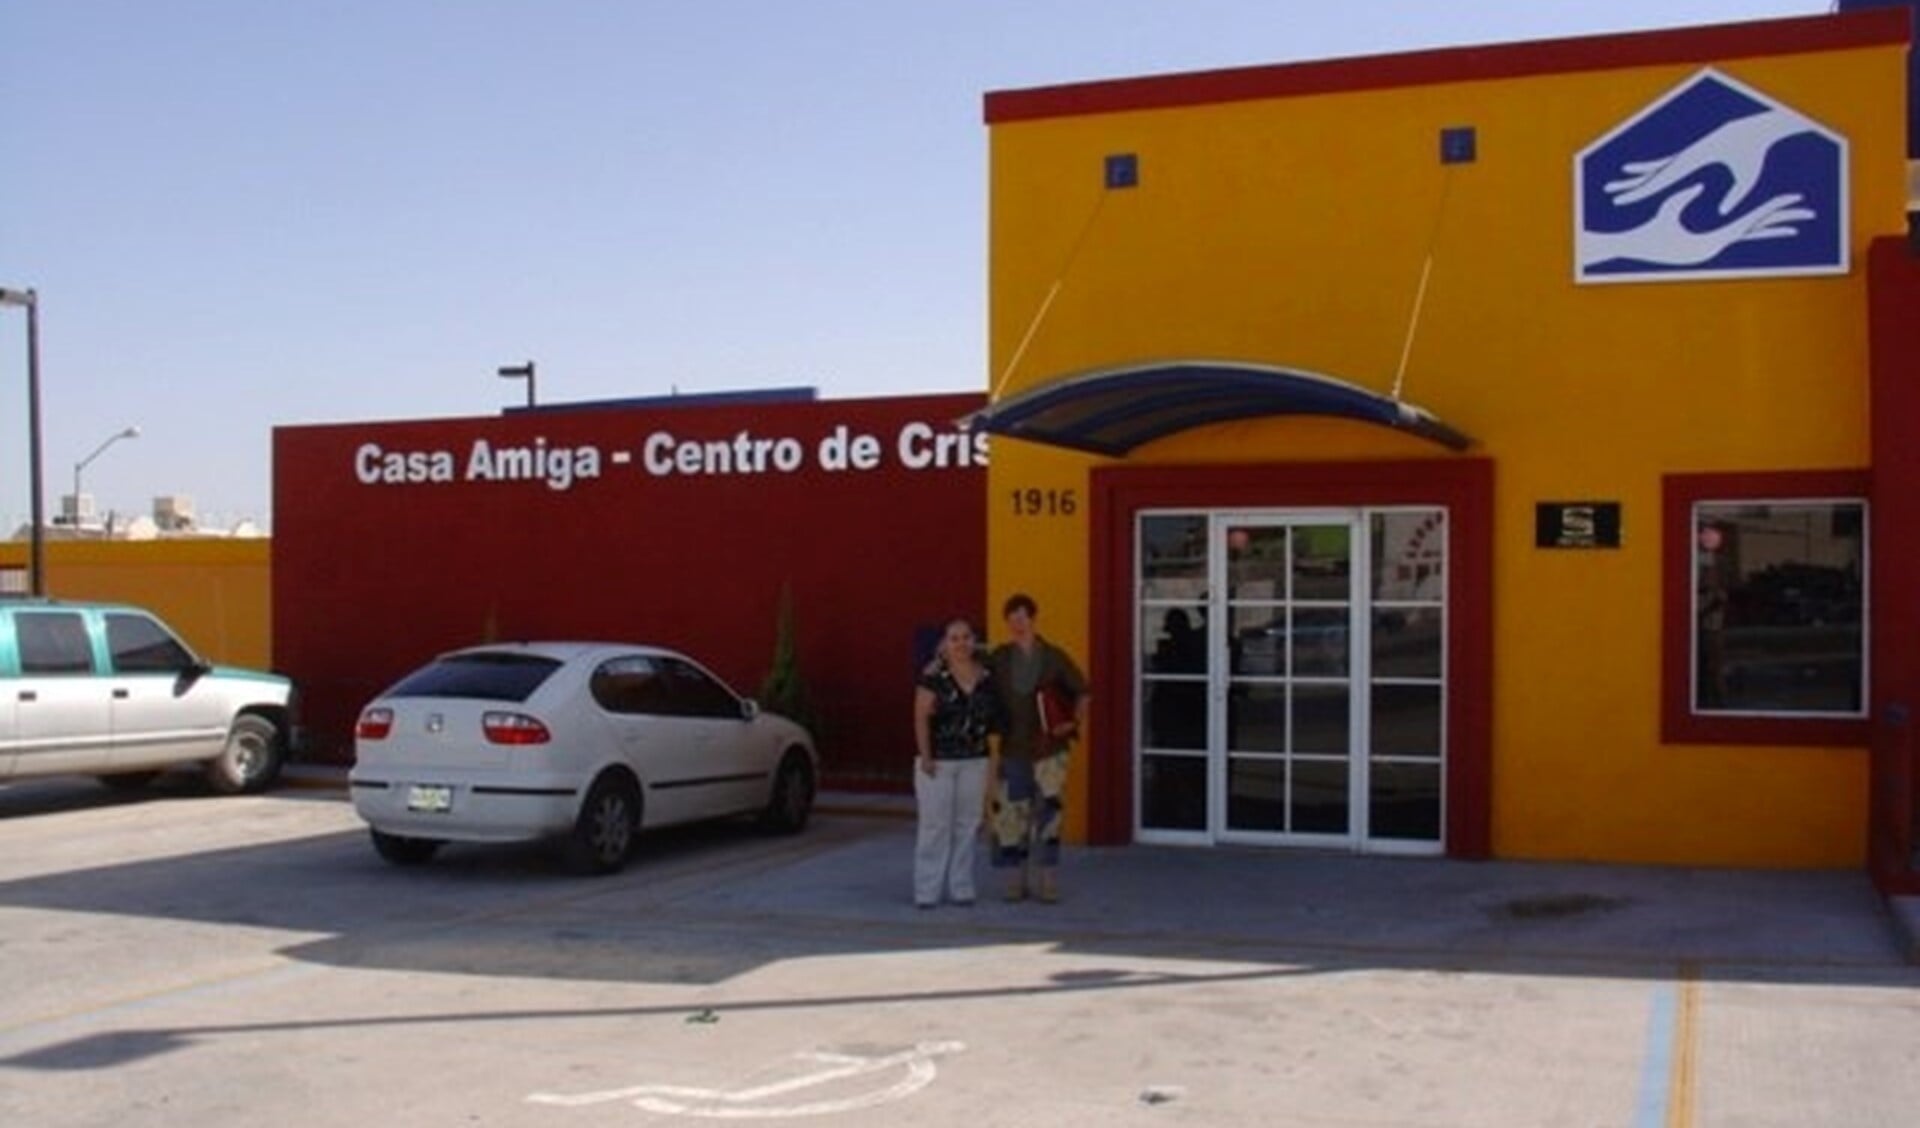 De stichting Hester ondersteunt het vrouwencentrum Casa Amiga in Ciudad Juárez in het noorden van México financieel en bij het bieden van psychische, juridische, educatieve en maatschappelijke hulp aan vrouwen en het preventief geven van voorlichting.